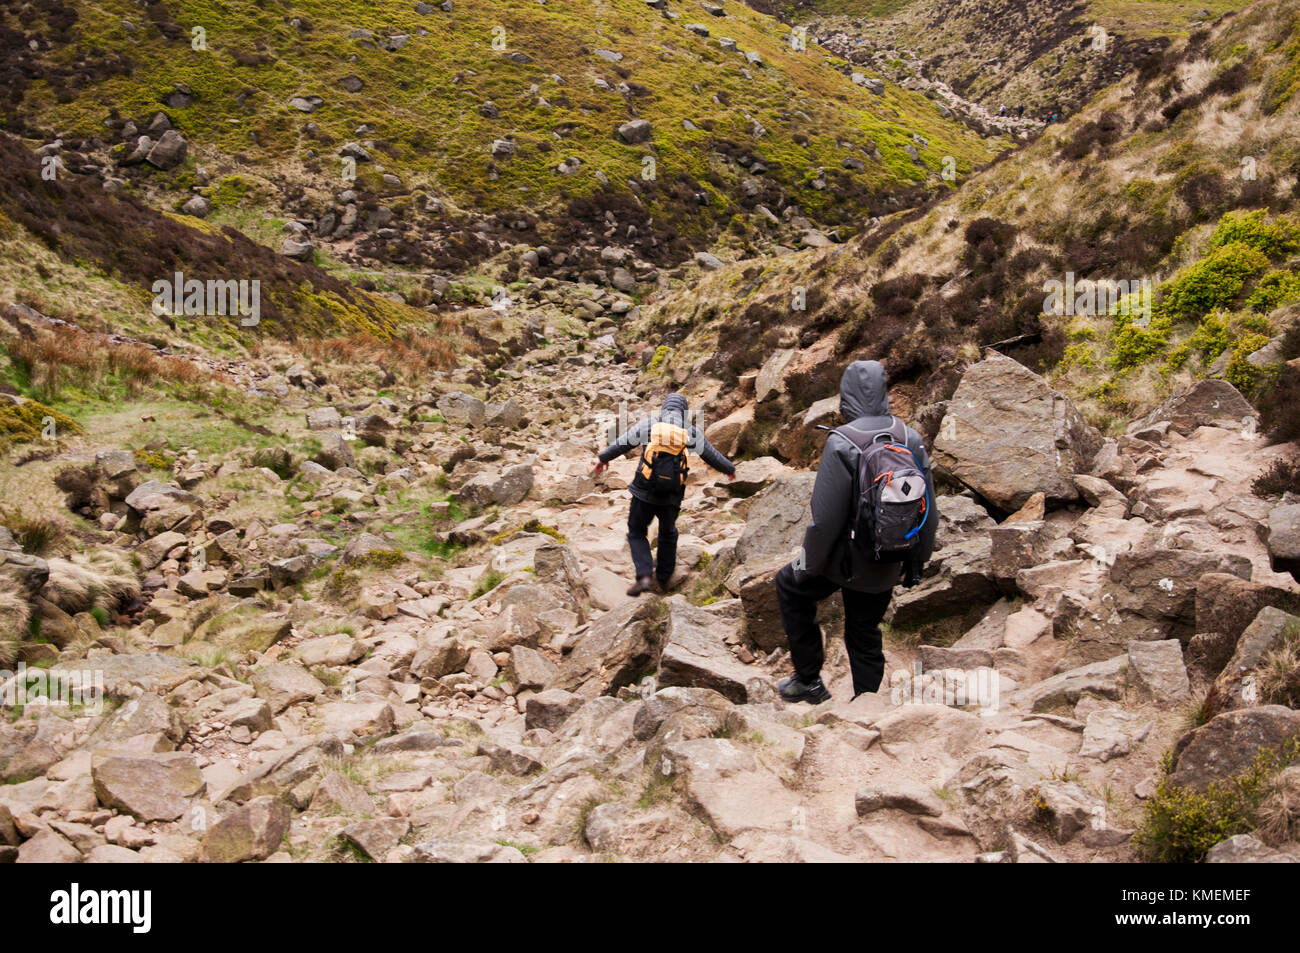 Walkers descending Grindsbrook Clough on Kinder Scout in the Peak District National Park Stock Photo